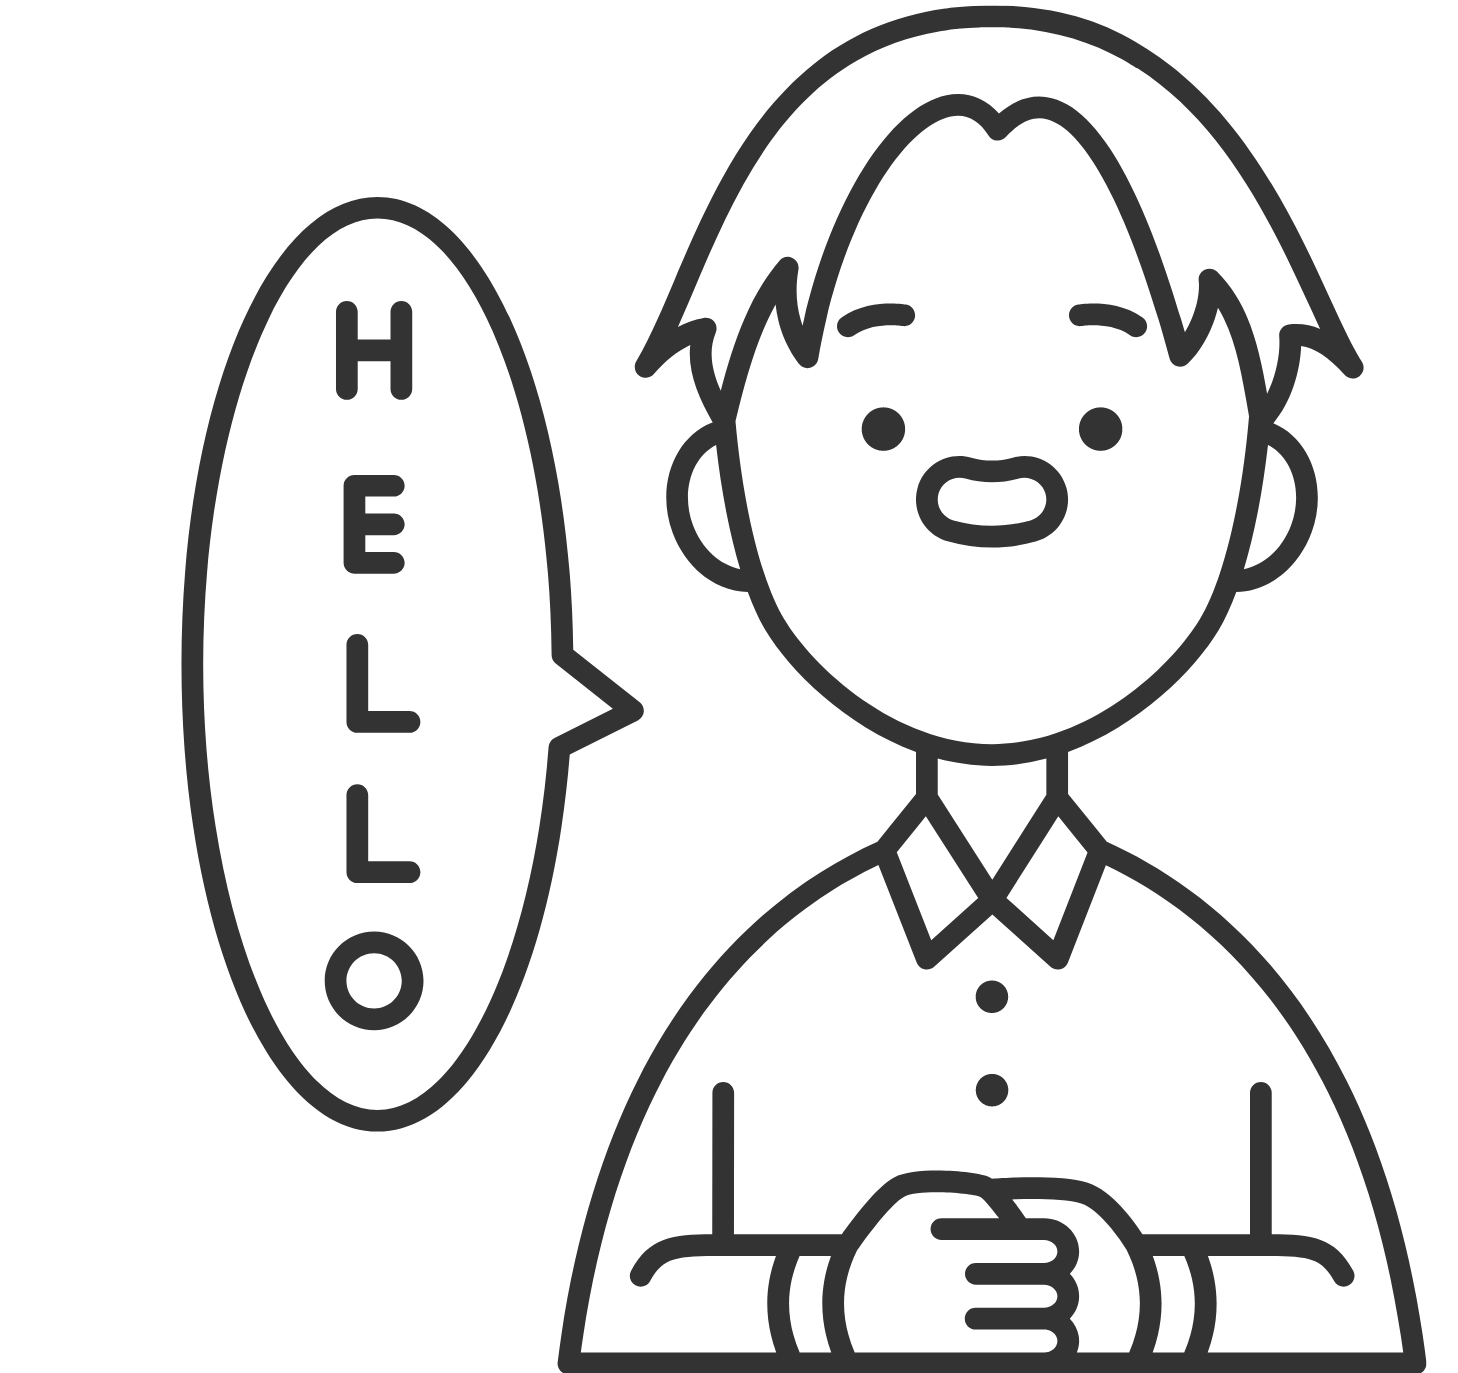 En la imagen se puede ver un chico que está practicando el idioma inglés, ya que aparece una viñeta en la que indica un saludo en inglés, como es 